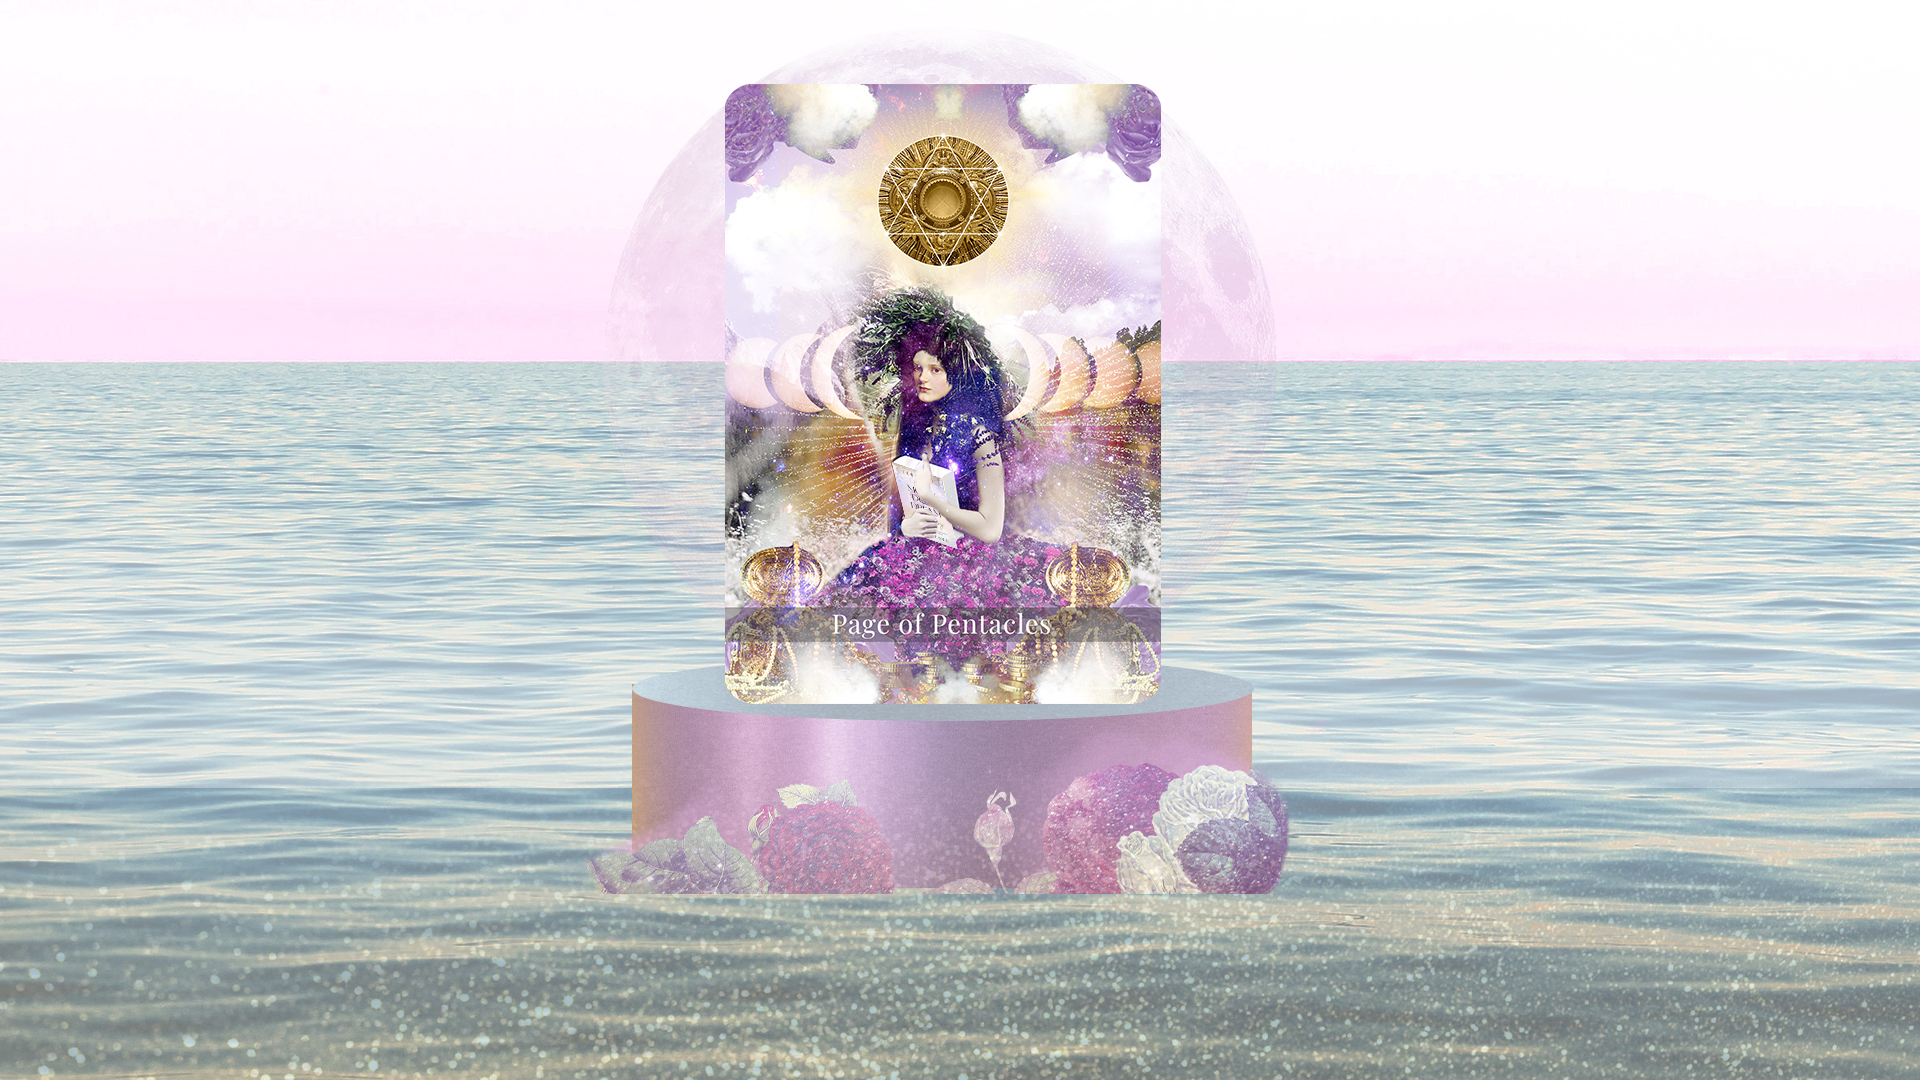 A tarot card on a podum floating on an ocean